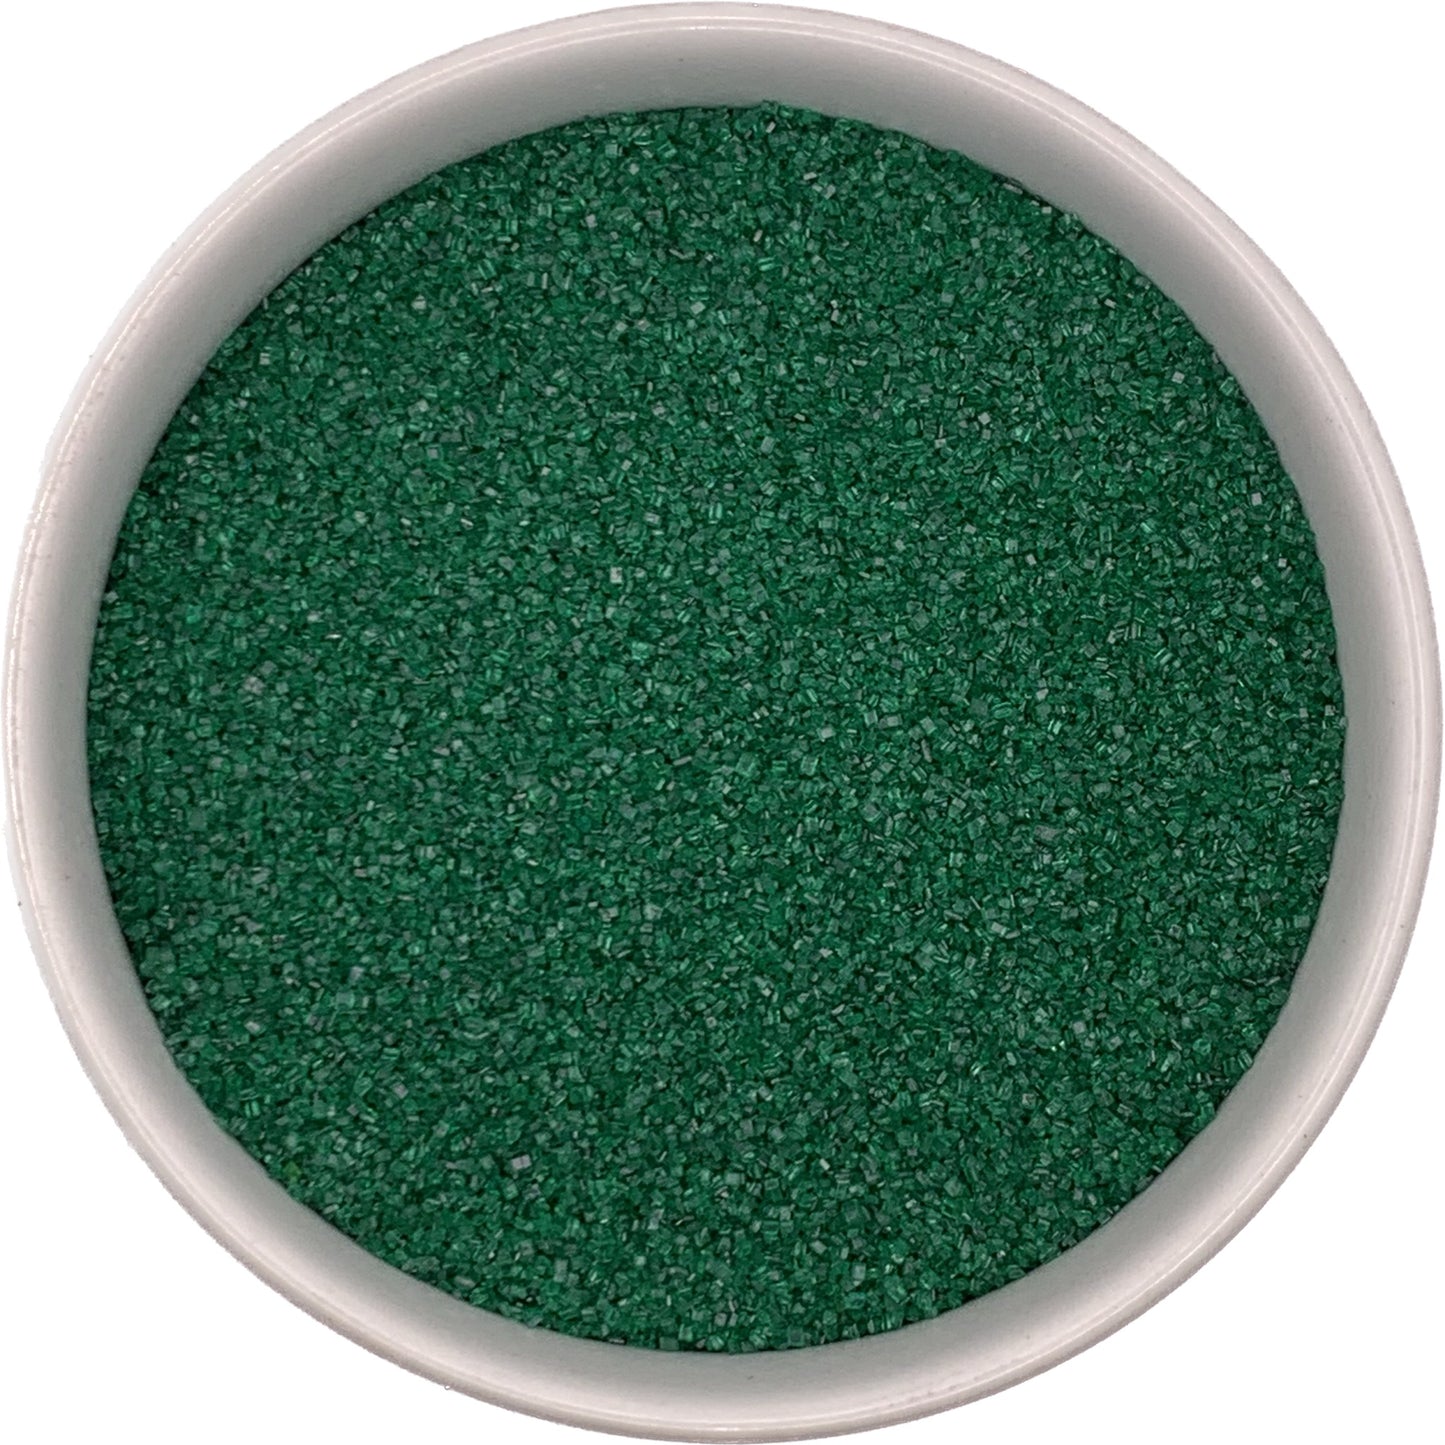 Green colored fine sanding sugar